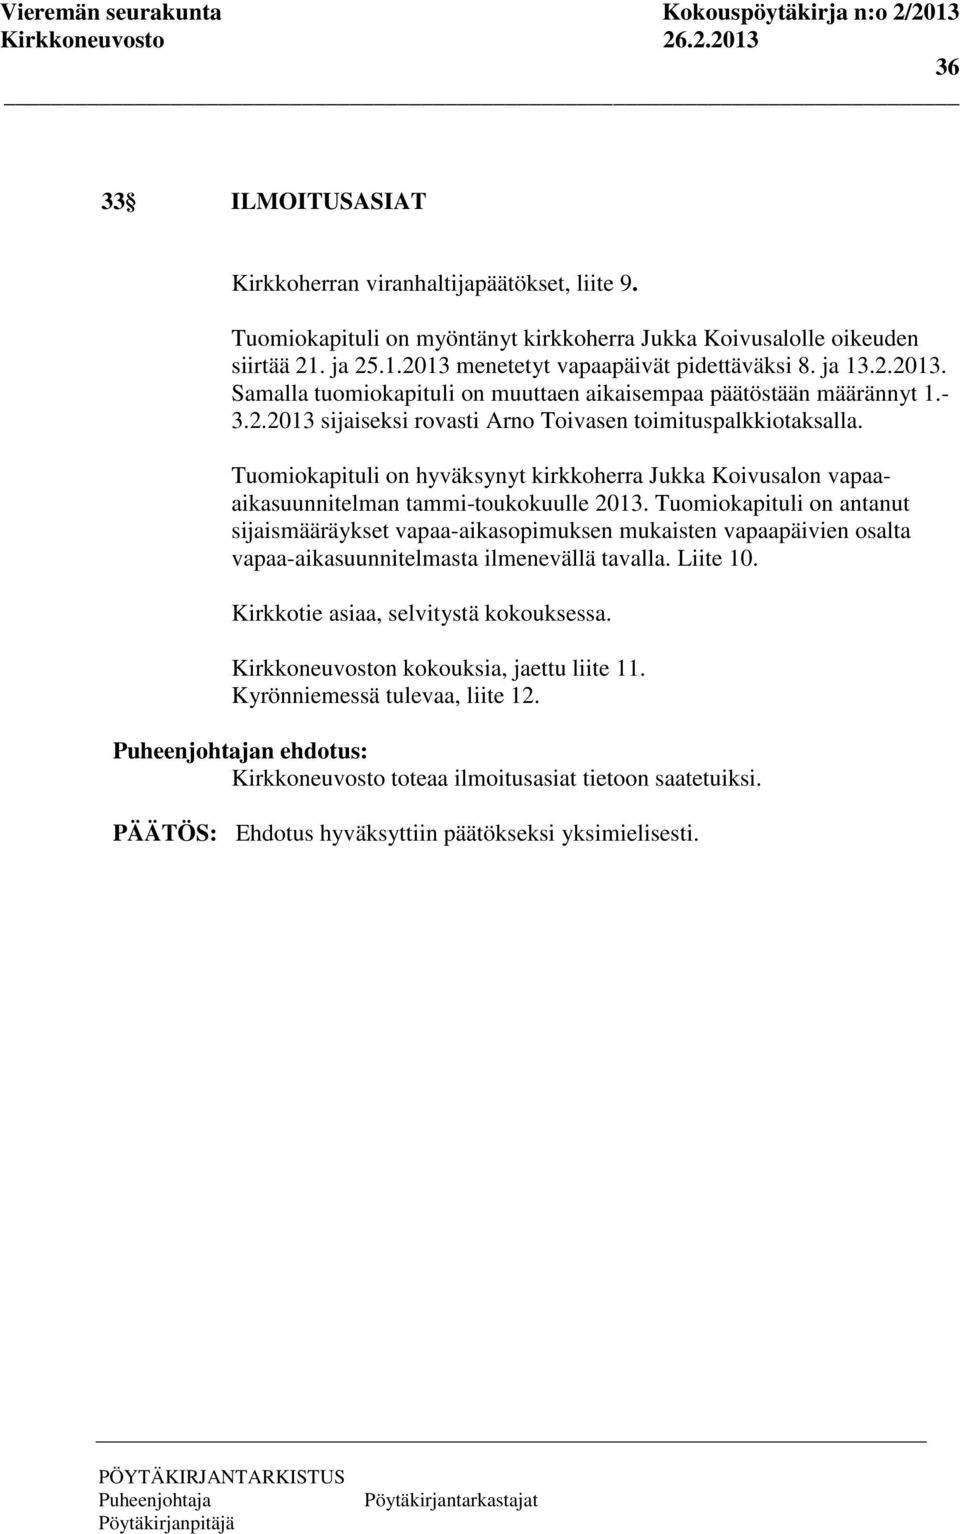 Tuomiokapituli on hyväksynyt kirkkoherra Jukka Koivusalon vapaaaikasuunnitelman tammi-toukokuulle 2013.